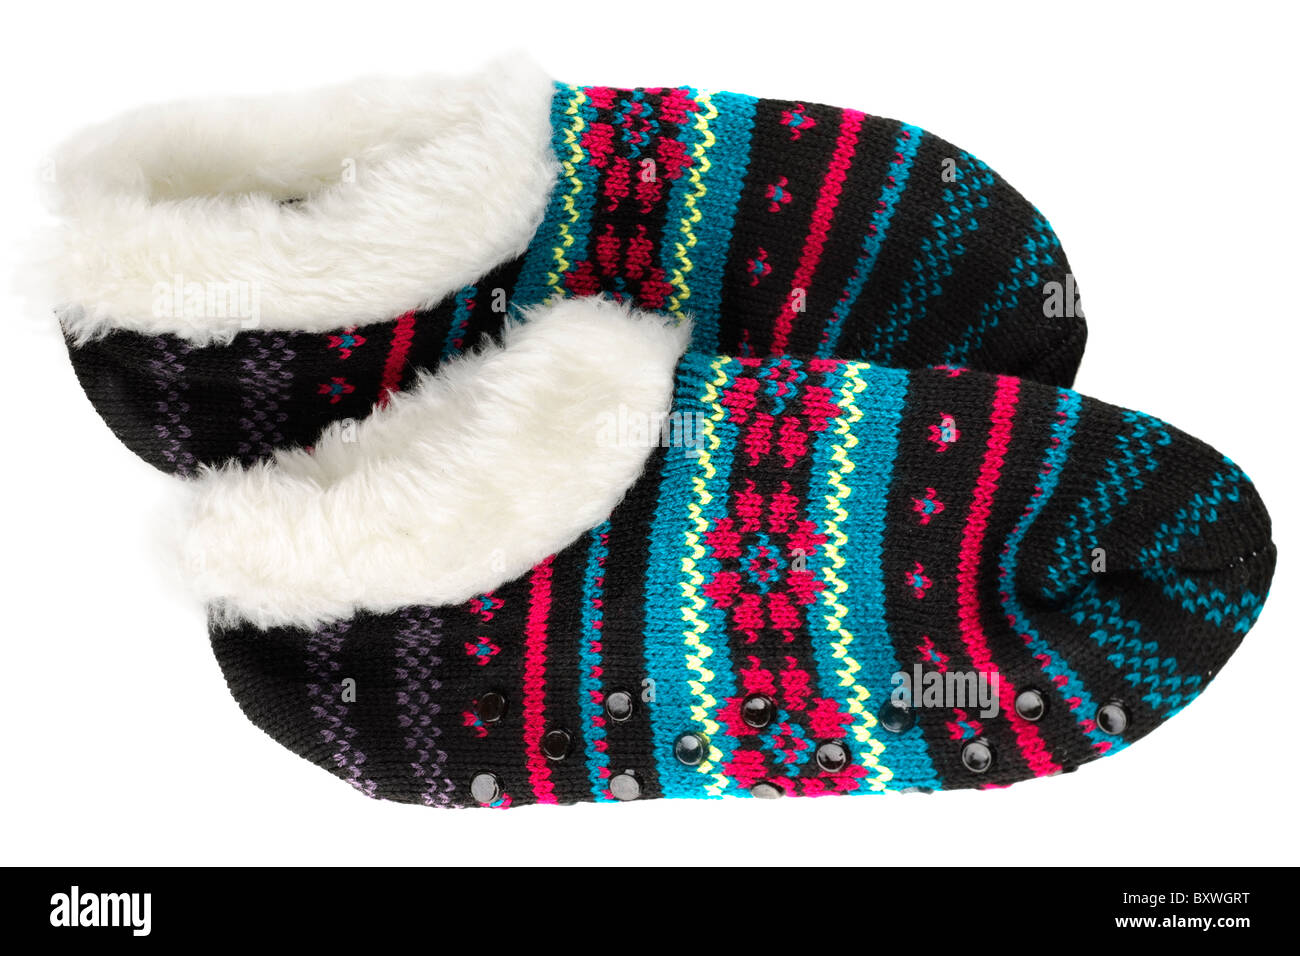 Pair of multi coloured slipper socks Stock Photo